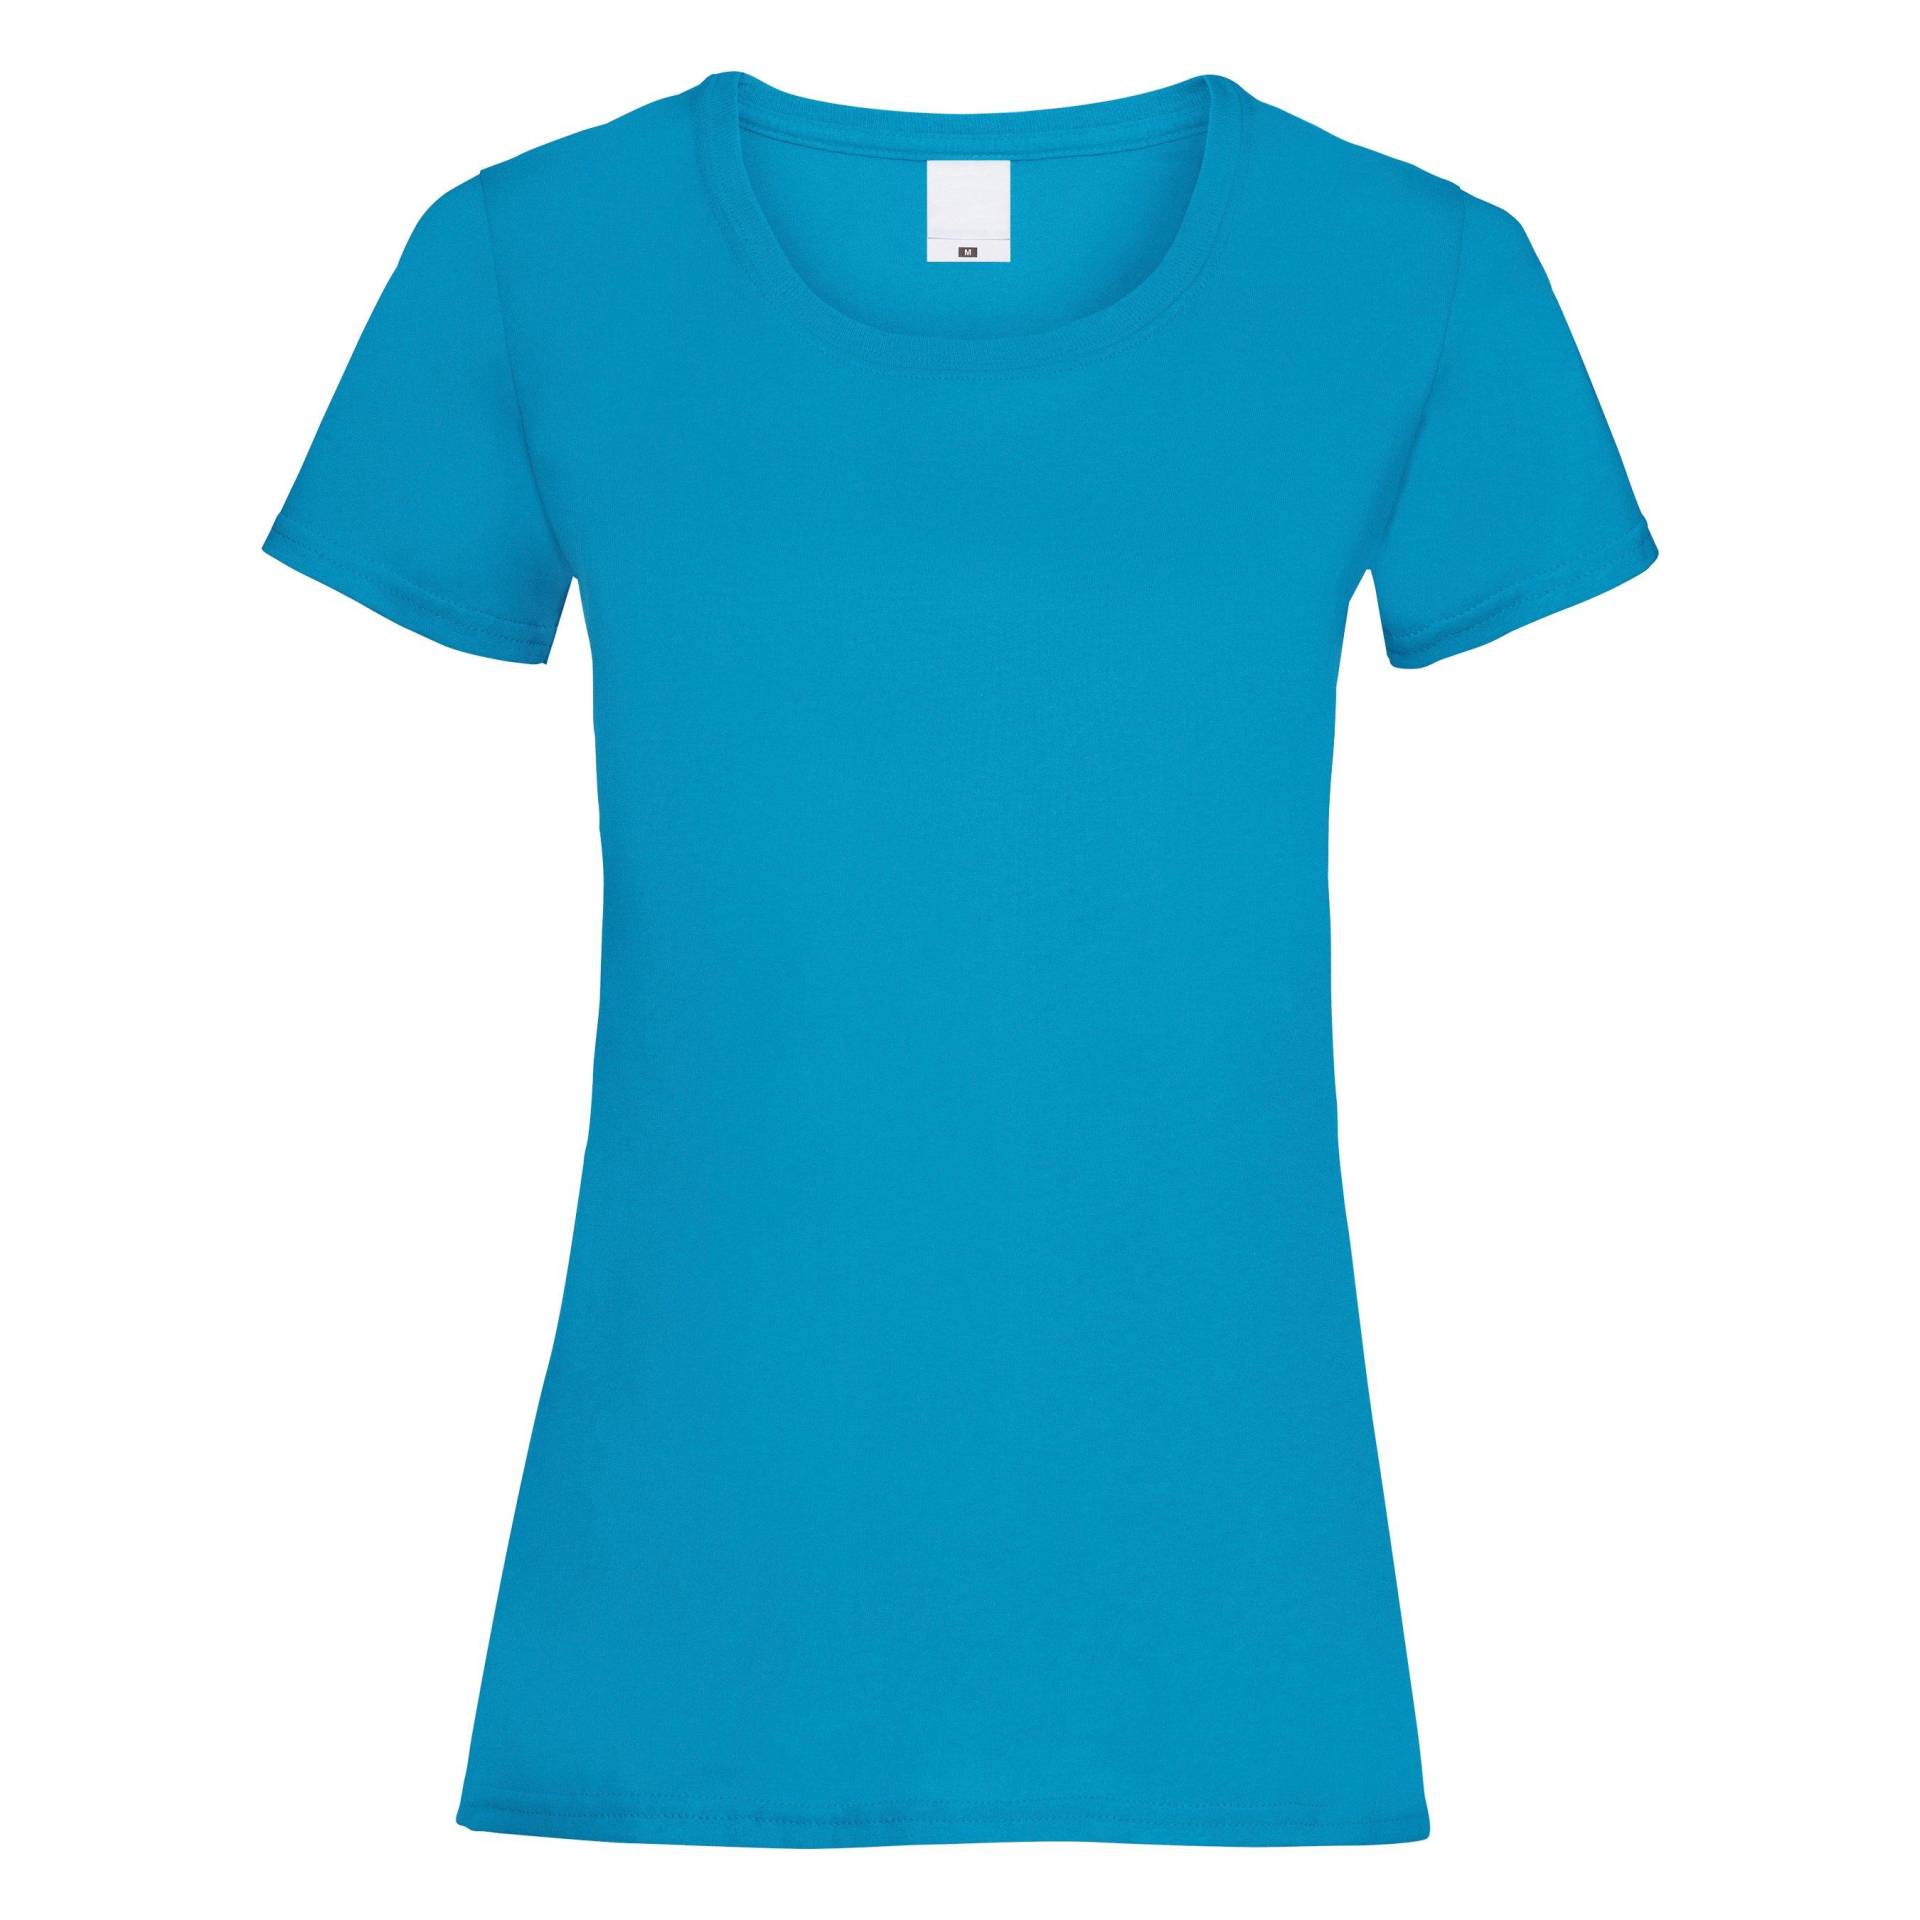 Value Tshirt Damen Cyan-Blau XL von Universal Textiles